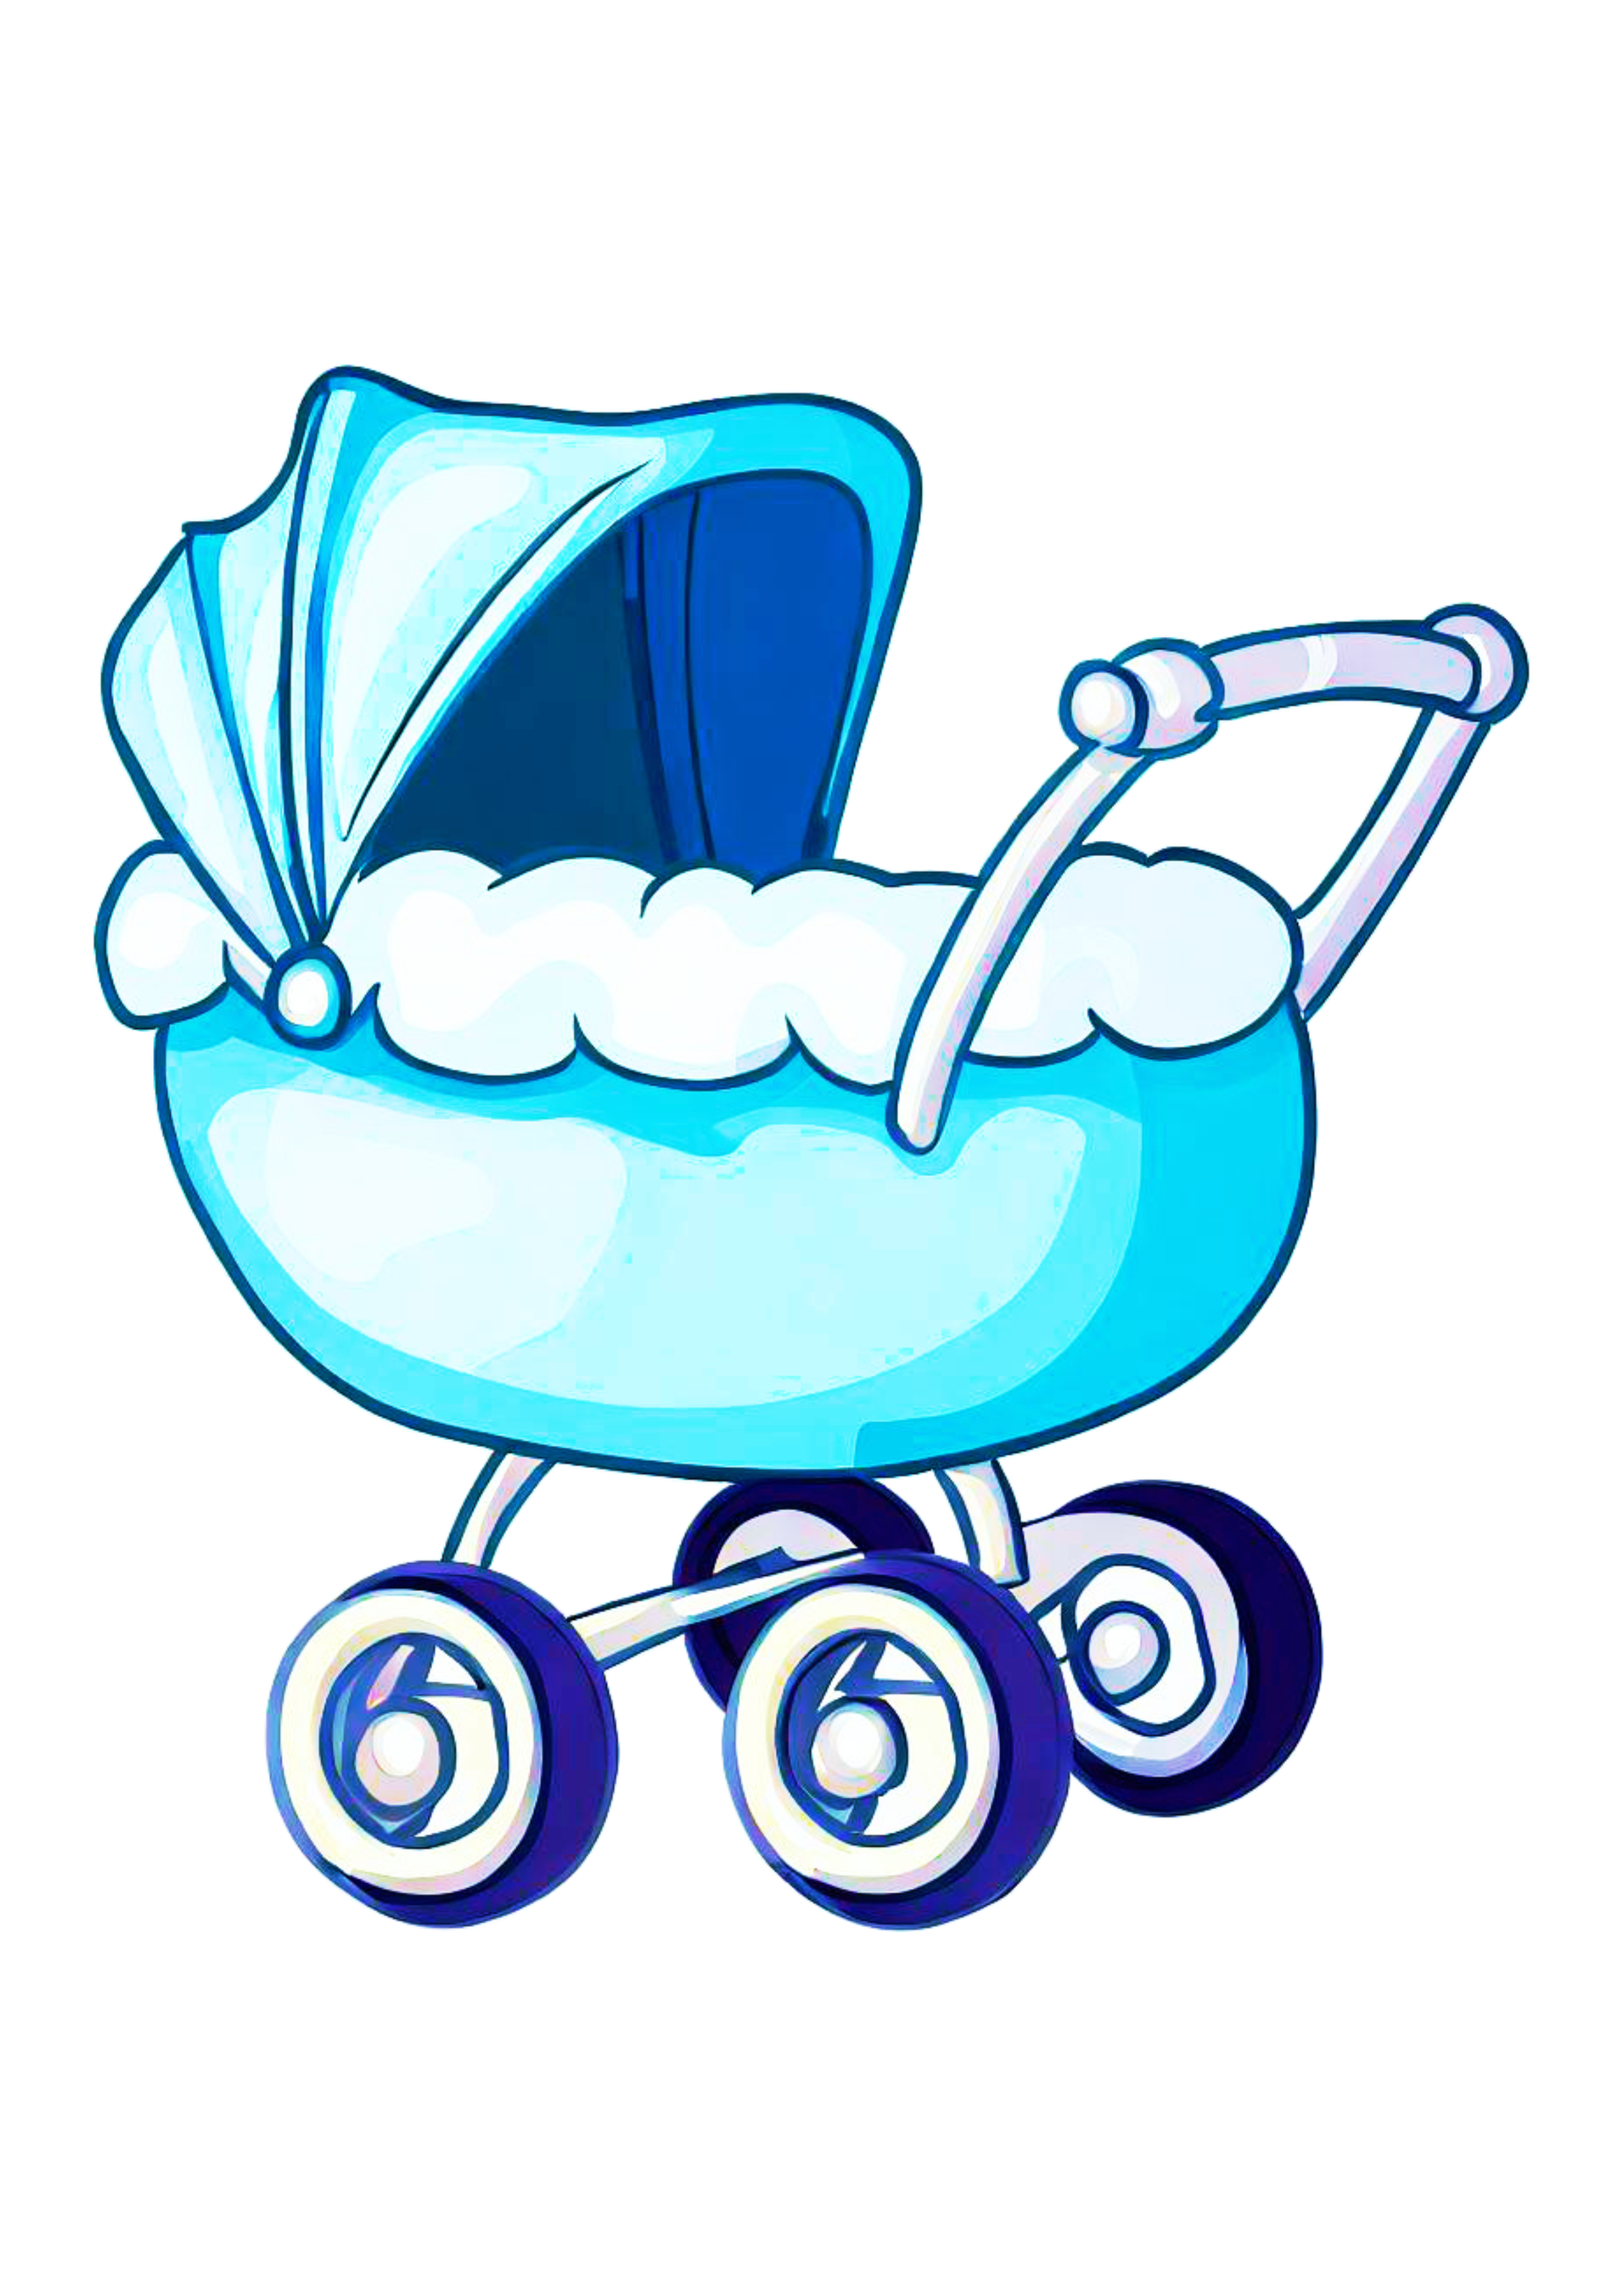 Carrinho de bebê bonitinho desenho simples ilustração rabisco azul png